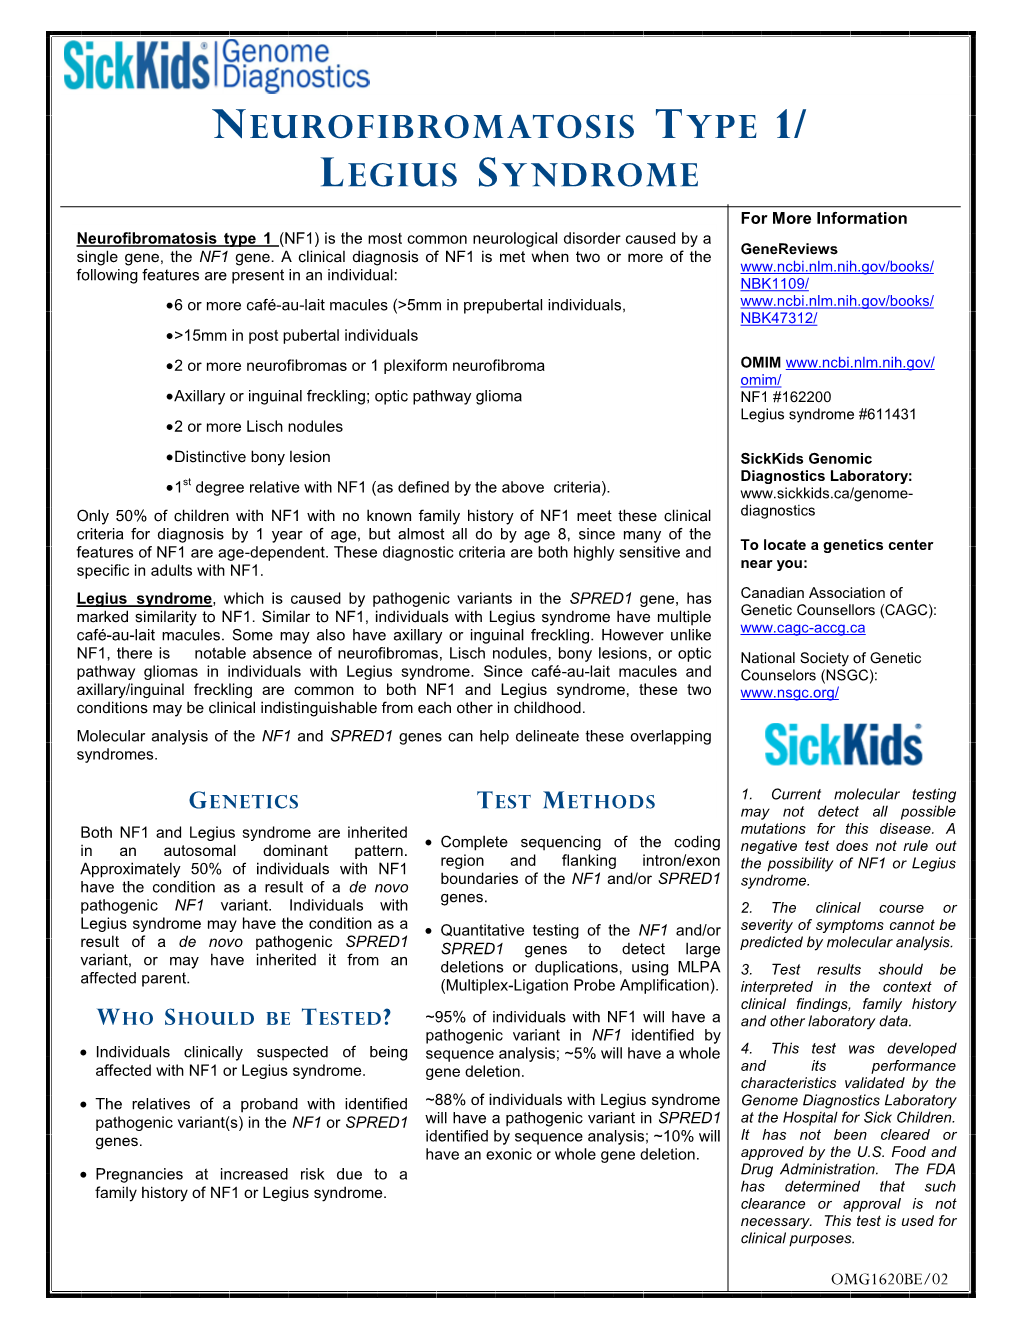 Neurofibromatosis Type 1-Legius Syndrome